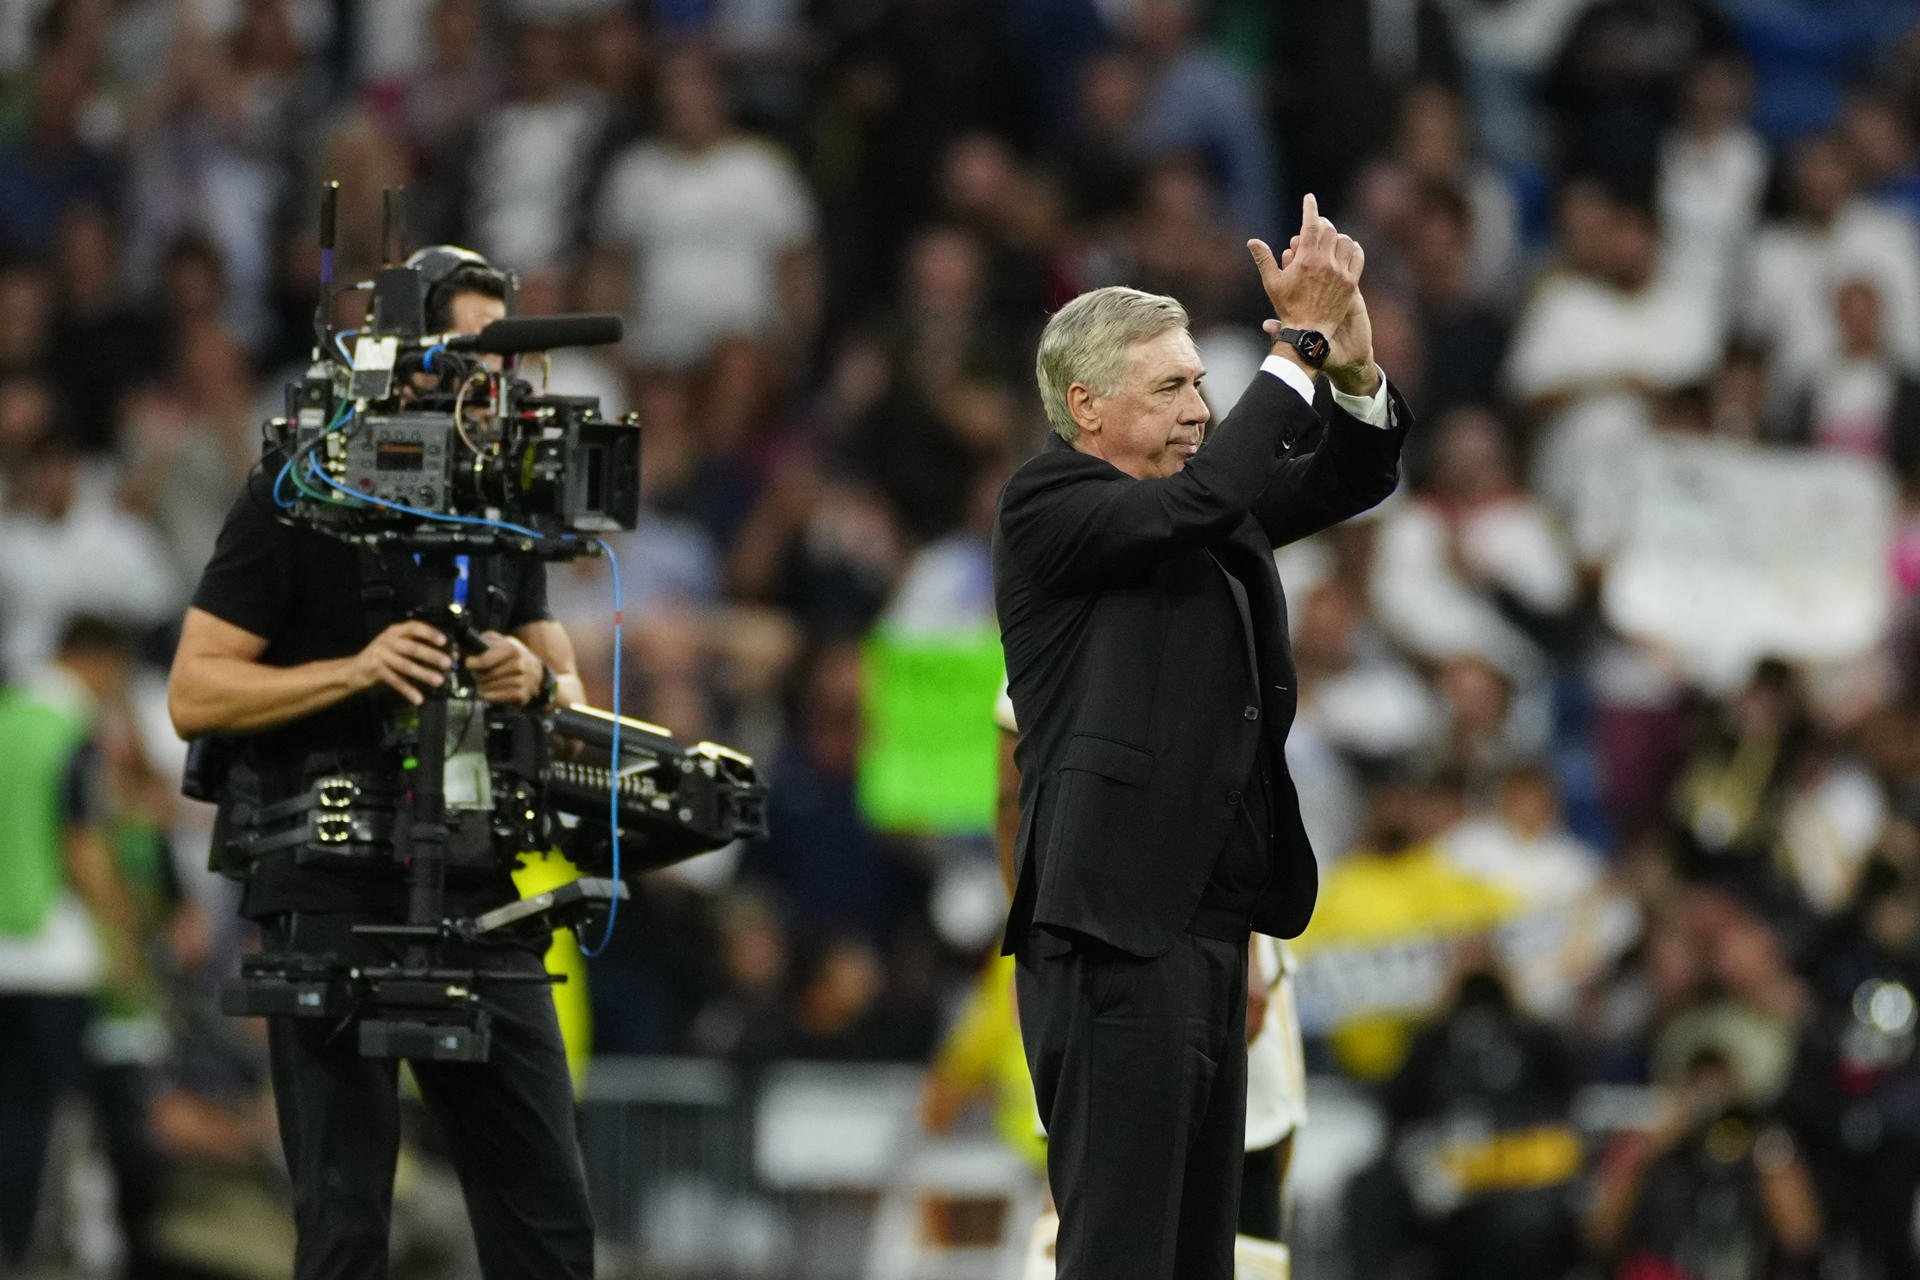 Ancelotti, gir, quan tot apuntava a una sortida del Reial Madrid demana la renovació, temporada excel·lent